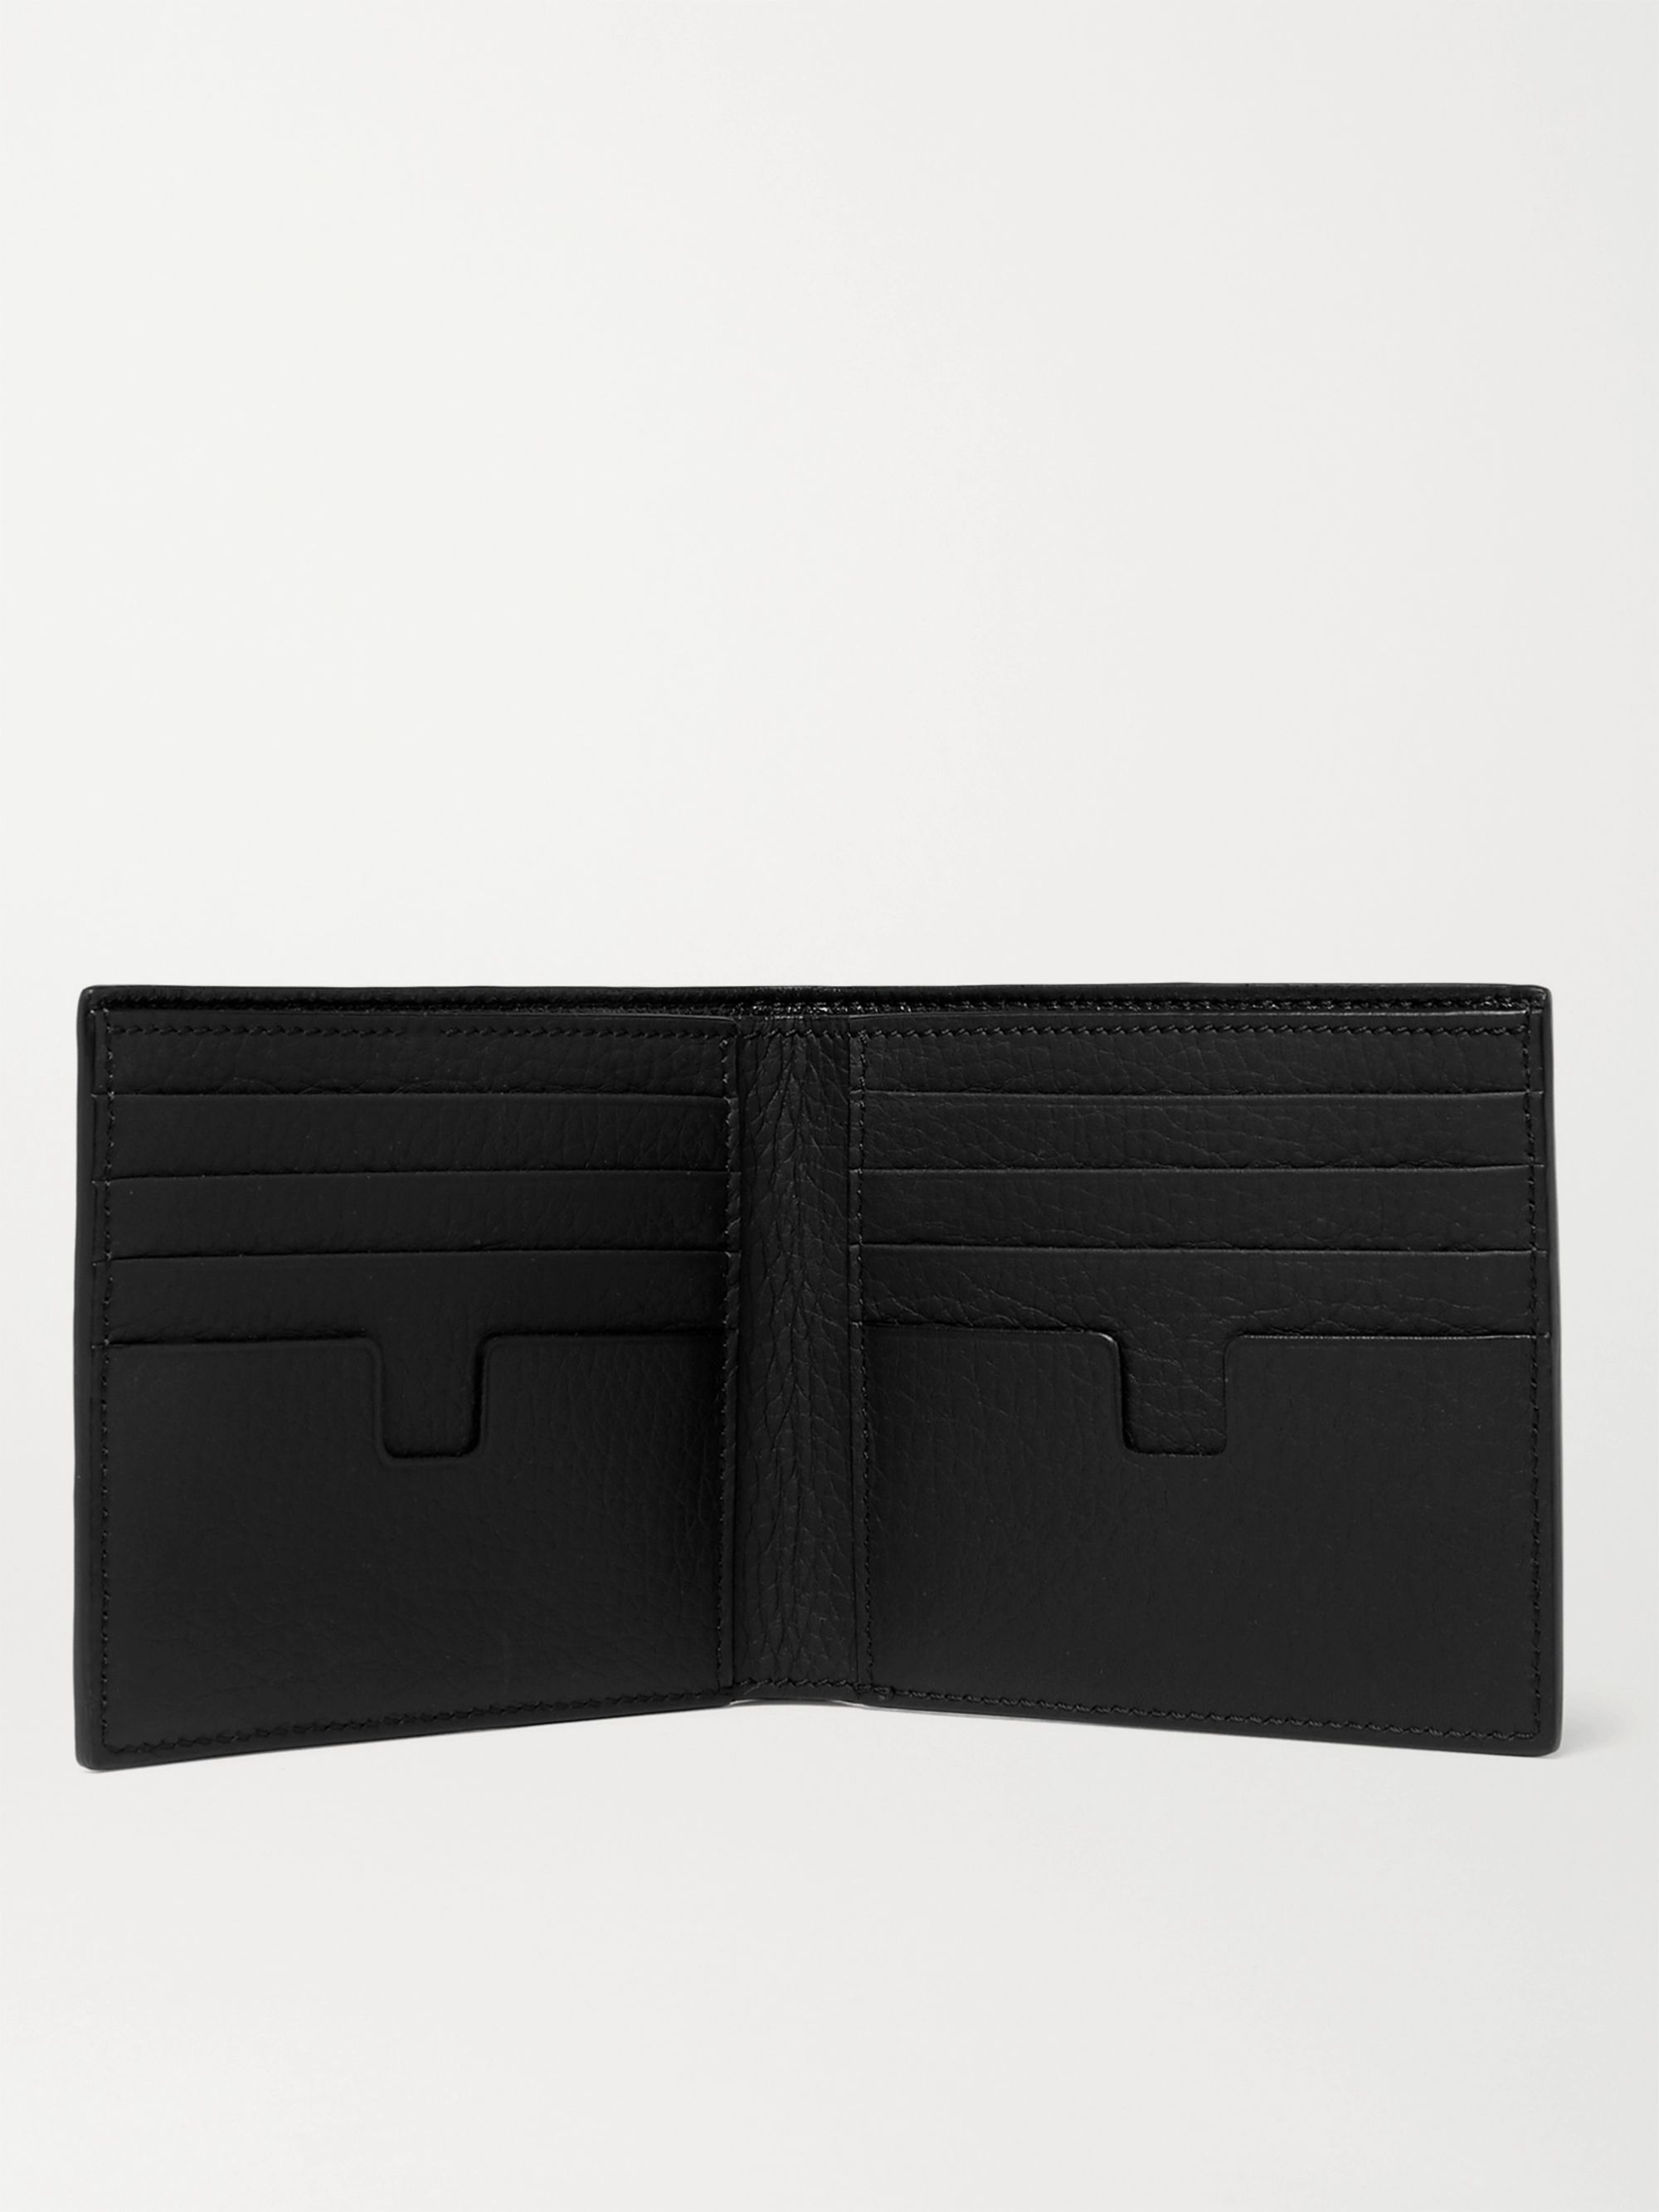 Black Full-Grain Leather Billfold Wallet | TOM FORD | MR PORTER